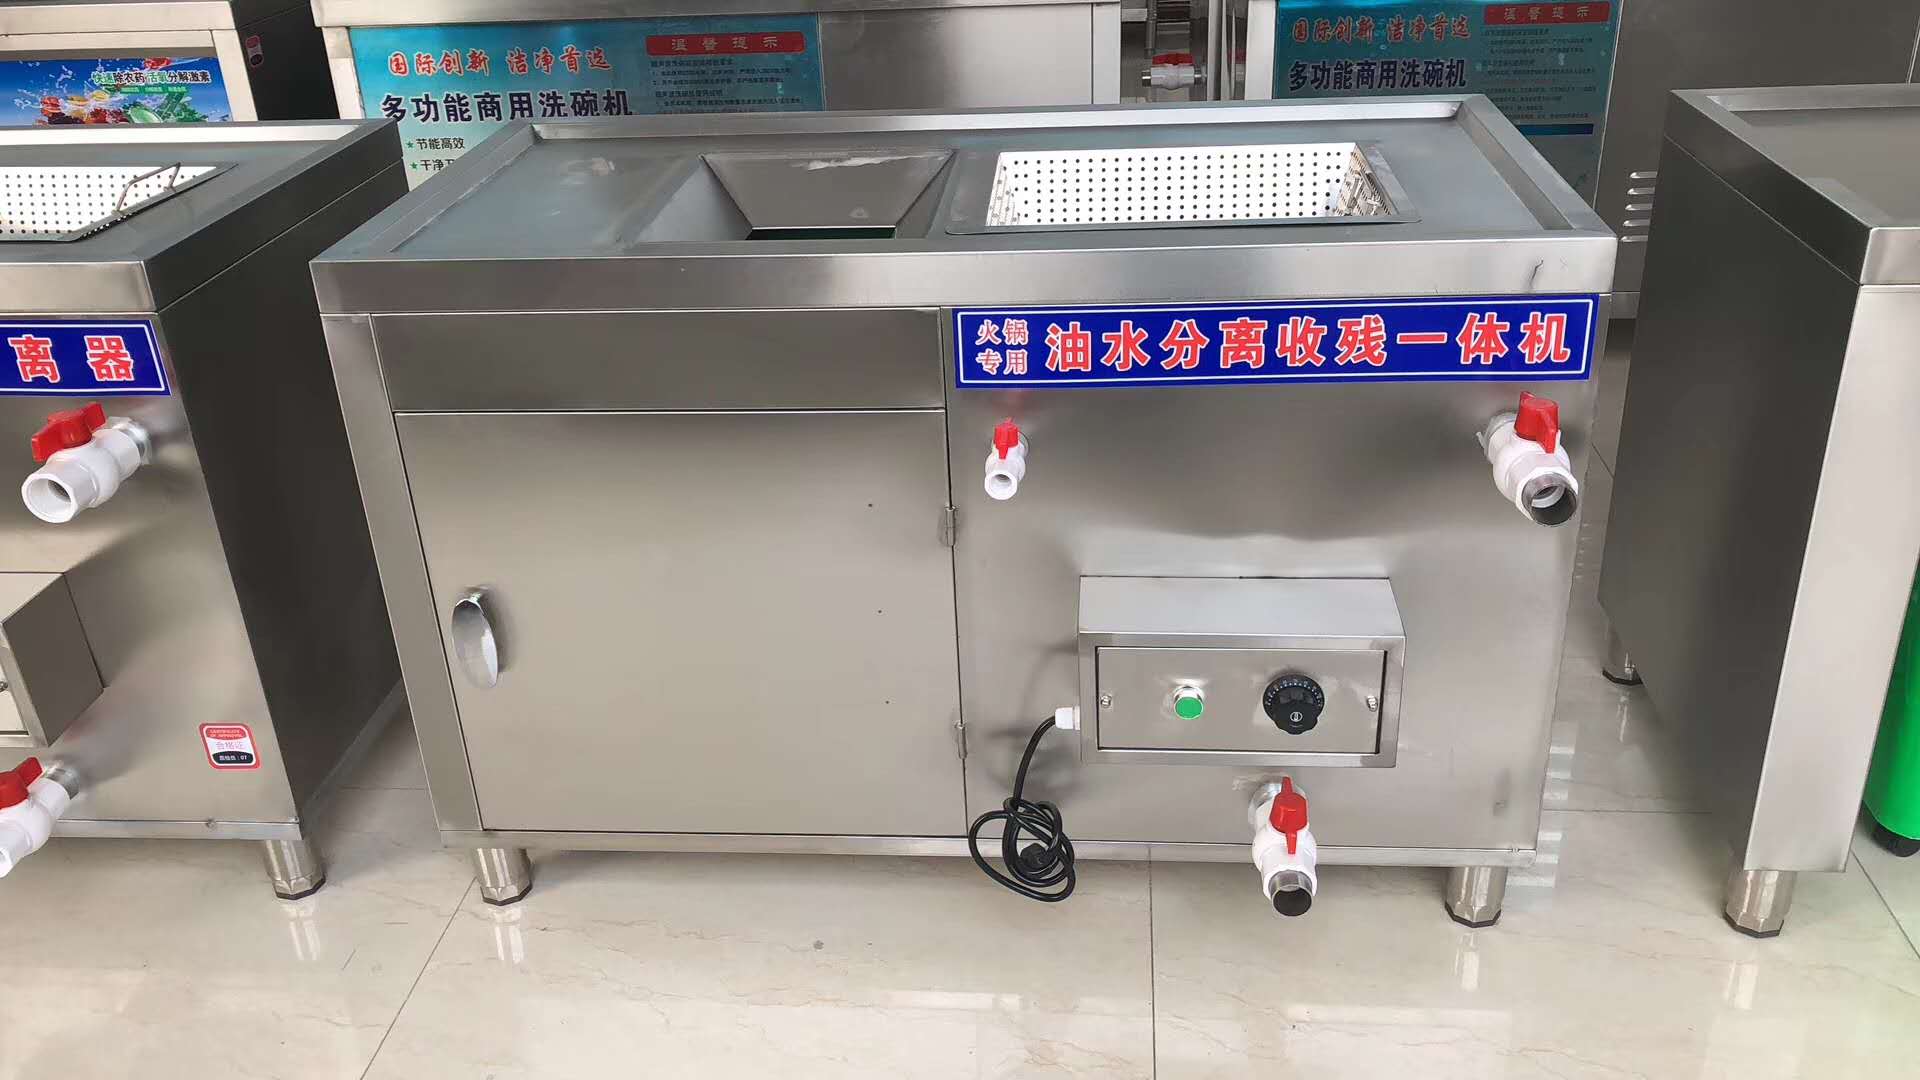 上海饭店用油水分离器-5上海饭店用油水分离器-5、油水分离器报价、安装油水分离器